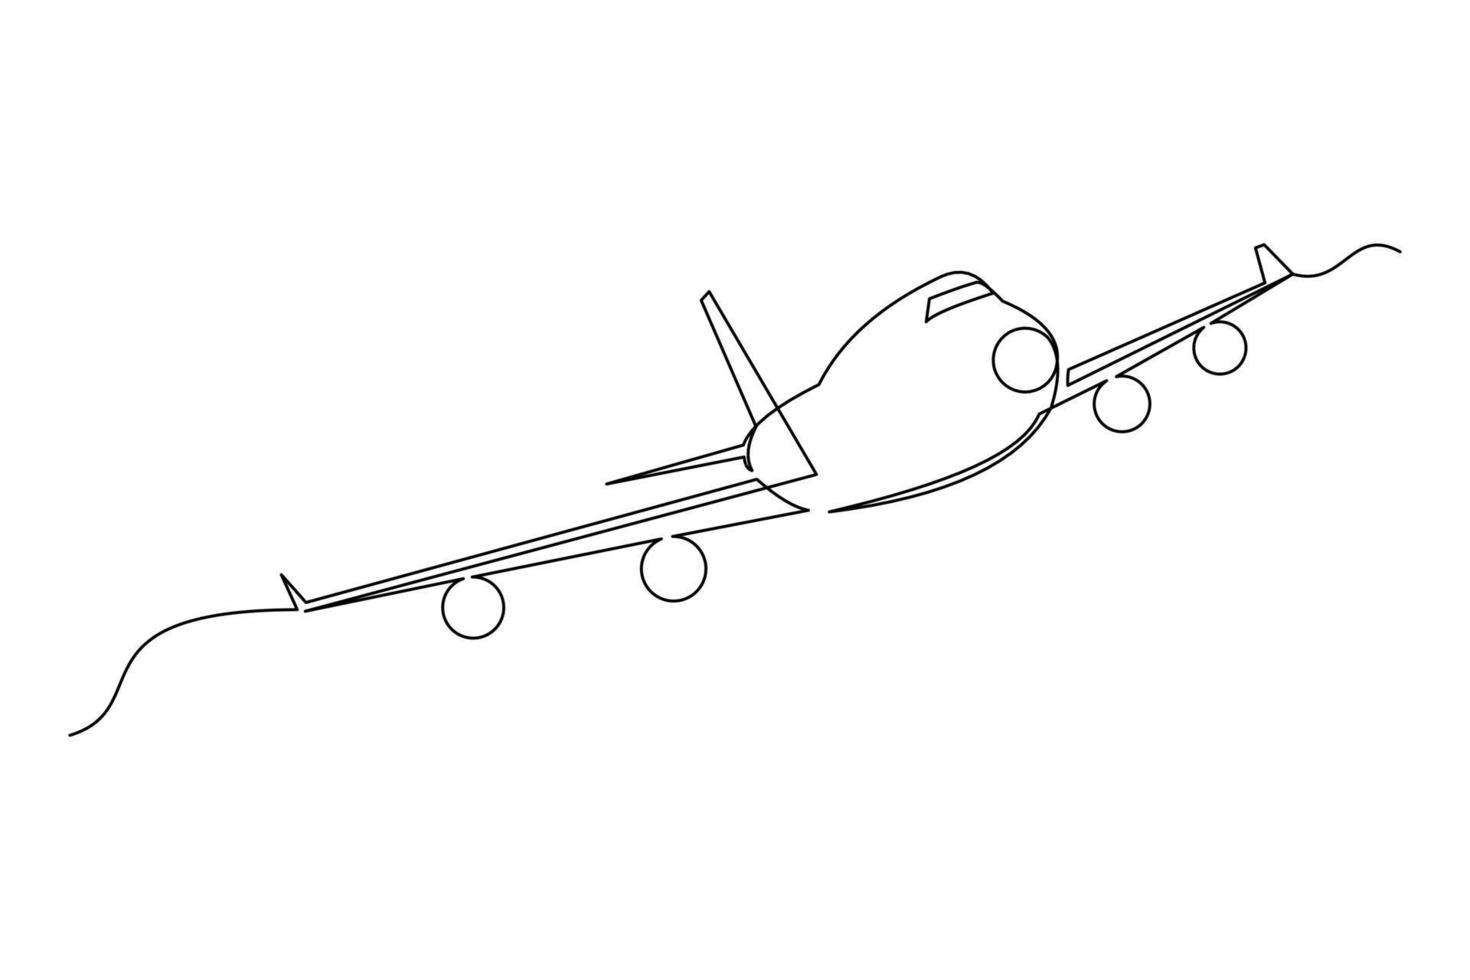 disegno a linea continua di aeroplano volante. telecomando per la modellazione dell'aeroplano a una linea singola. illustrazione vettoriale